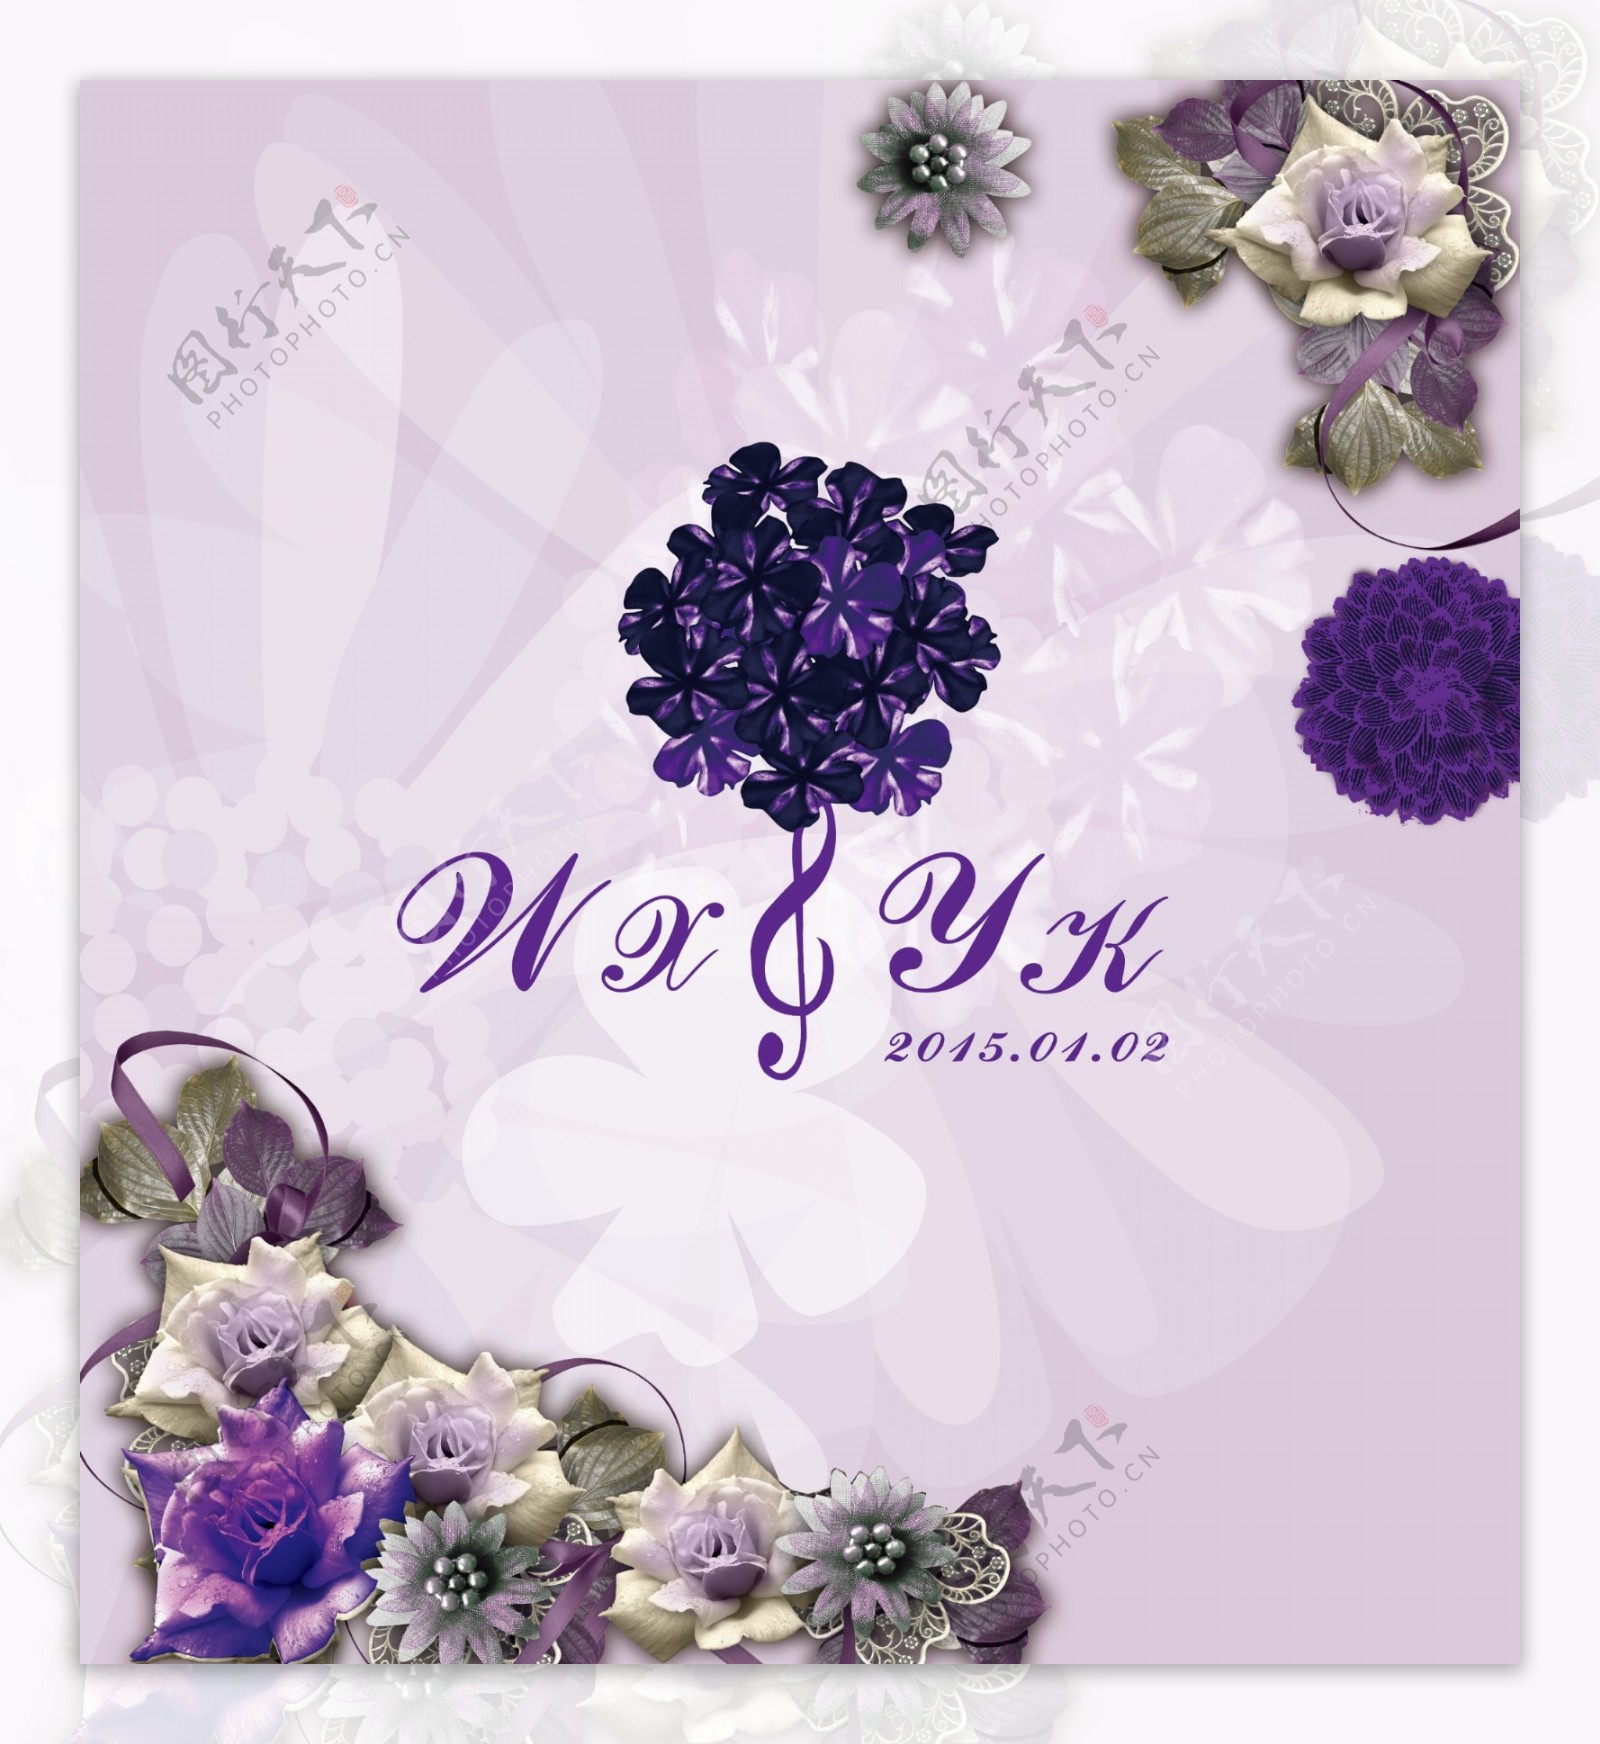 婚礼婚庆紫色背景素材logo图片